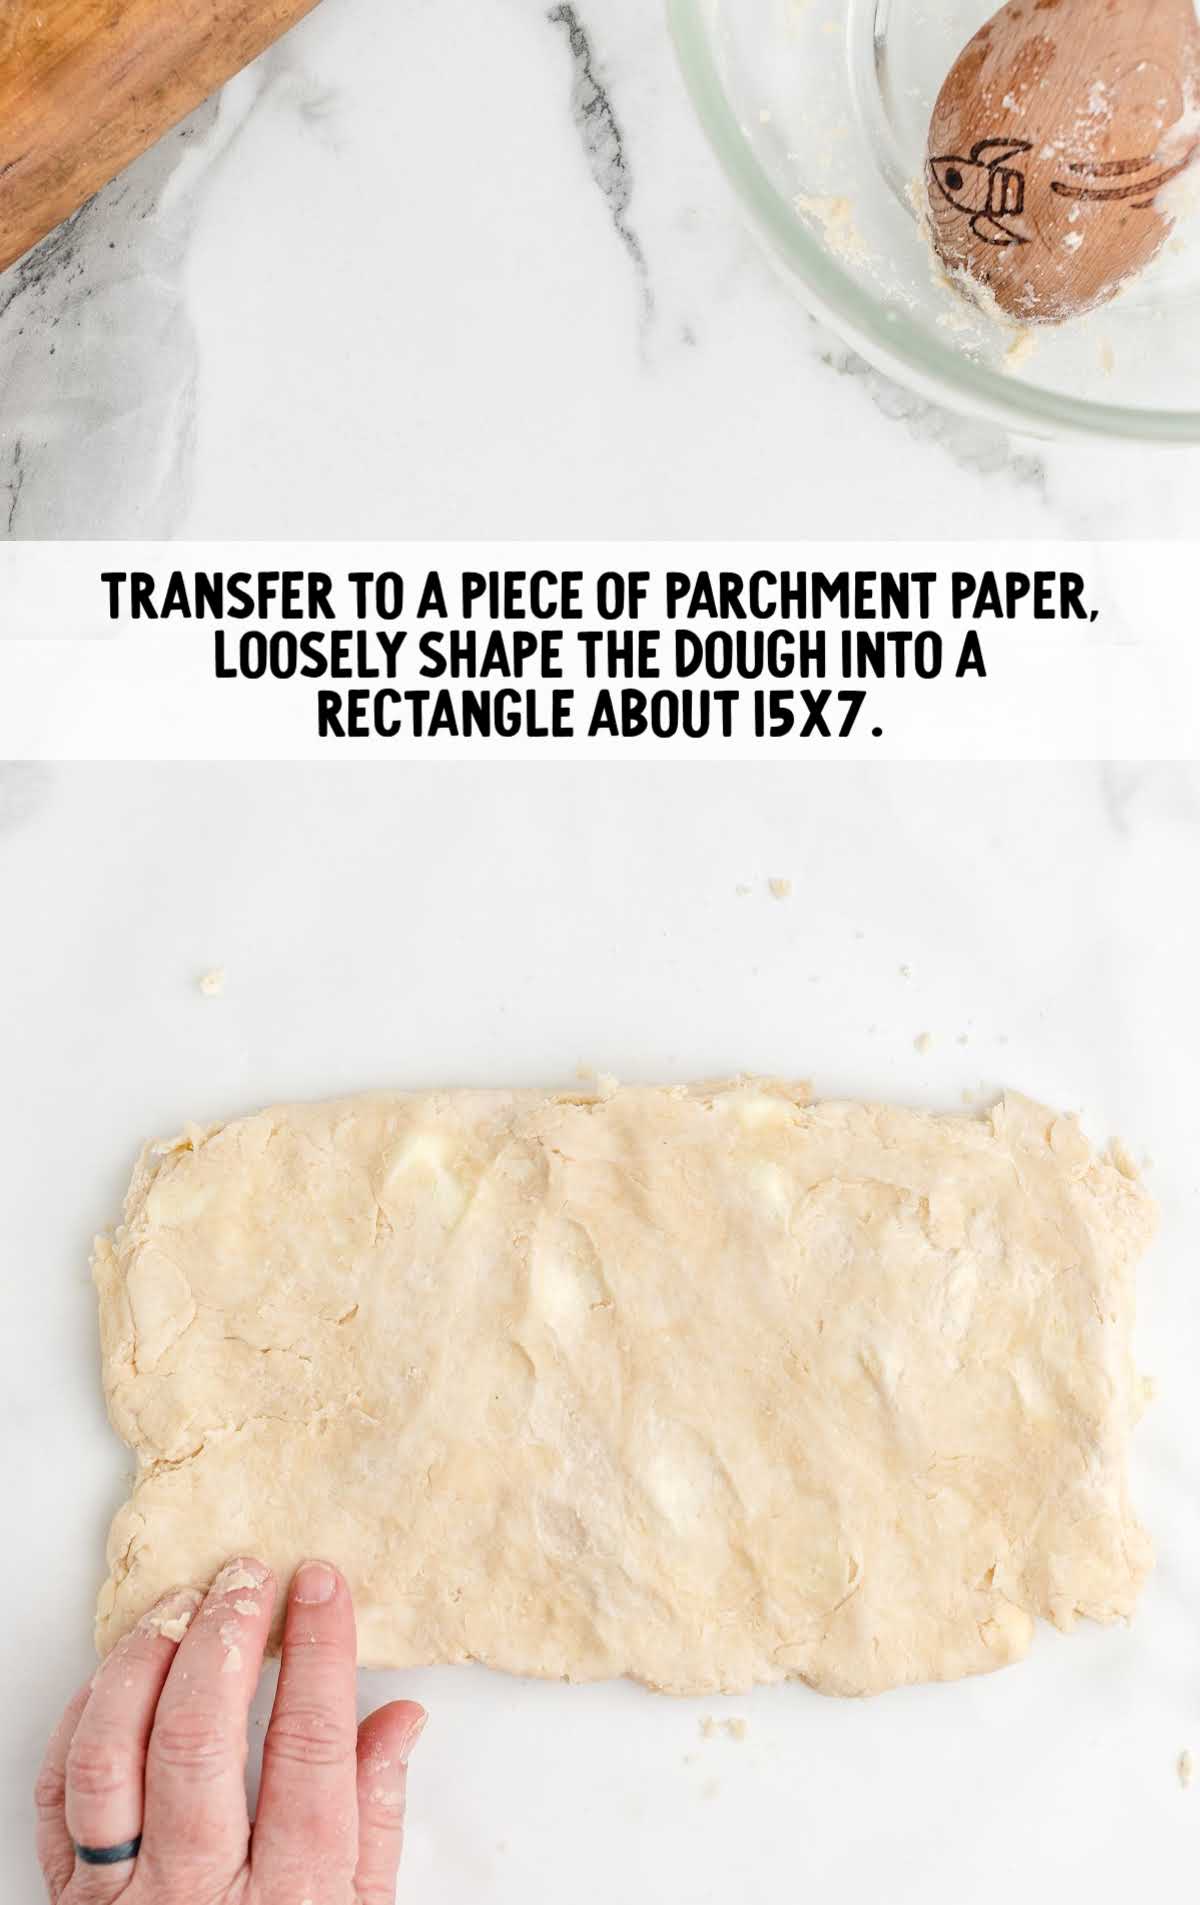 pie crust dough placed on parchment paper